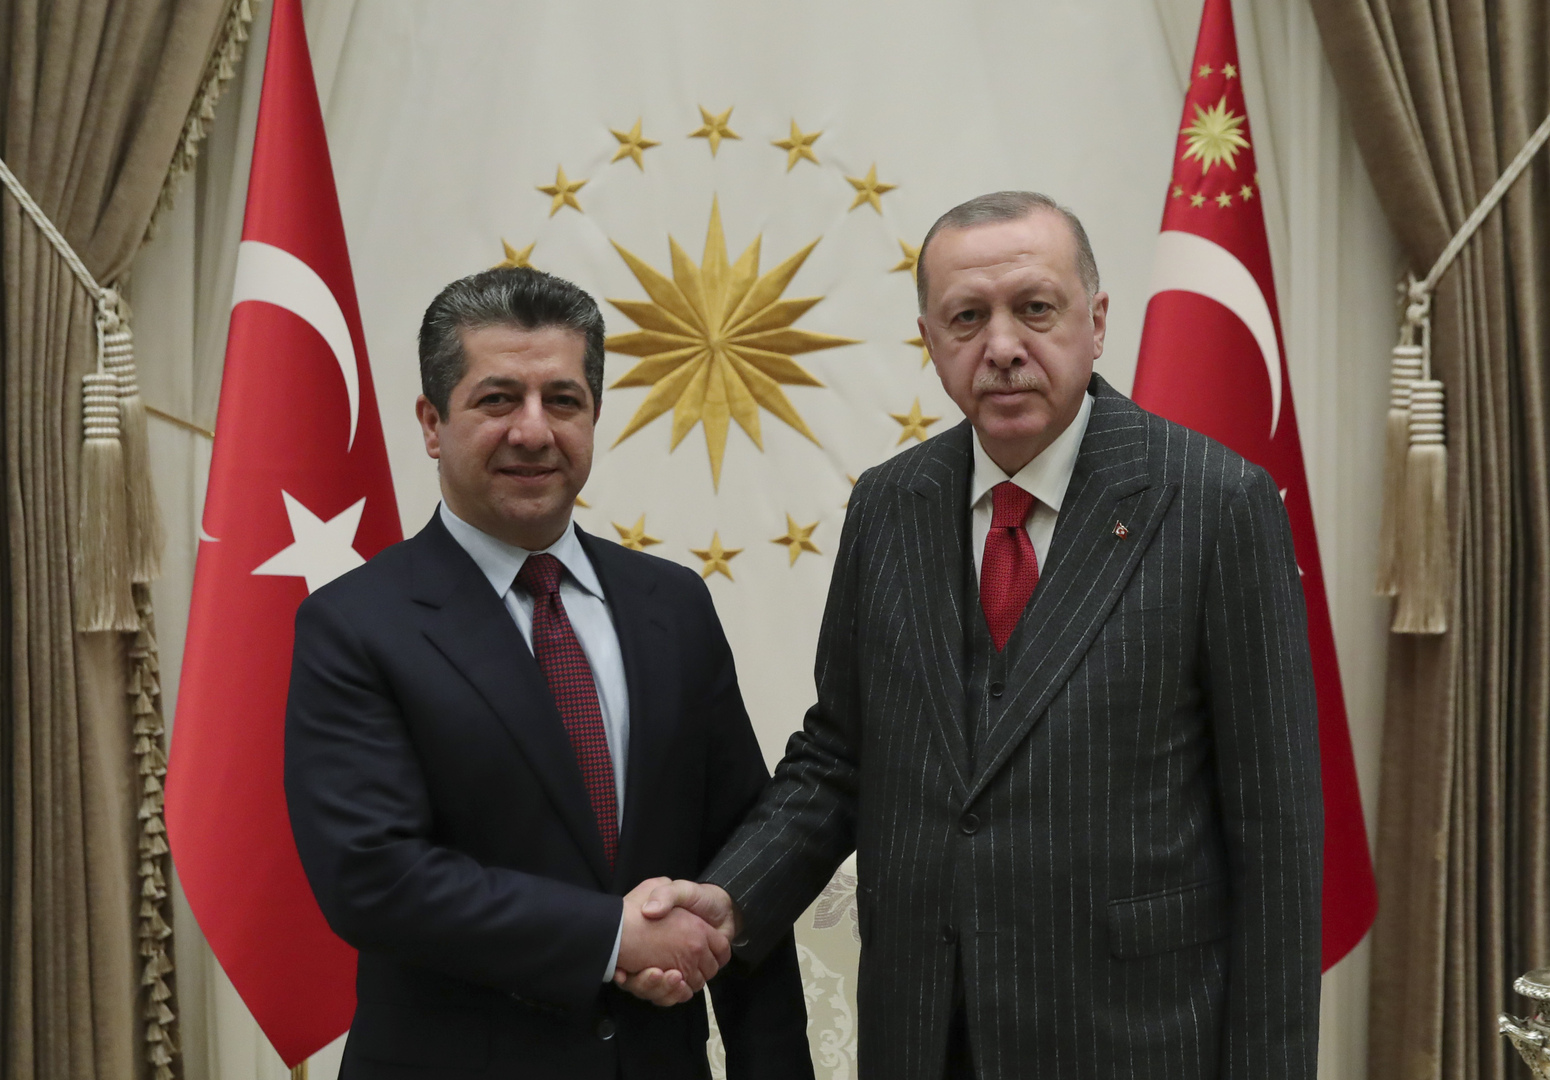 الرئيس التركي رجب طيب أردوغان، مع رئيس حكومة إقليم كردستان العراق، مسرور بارزاني.